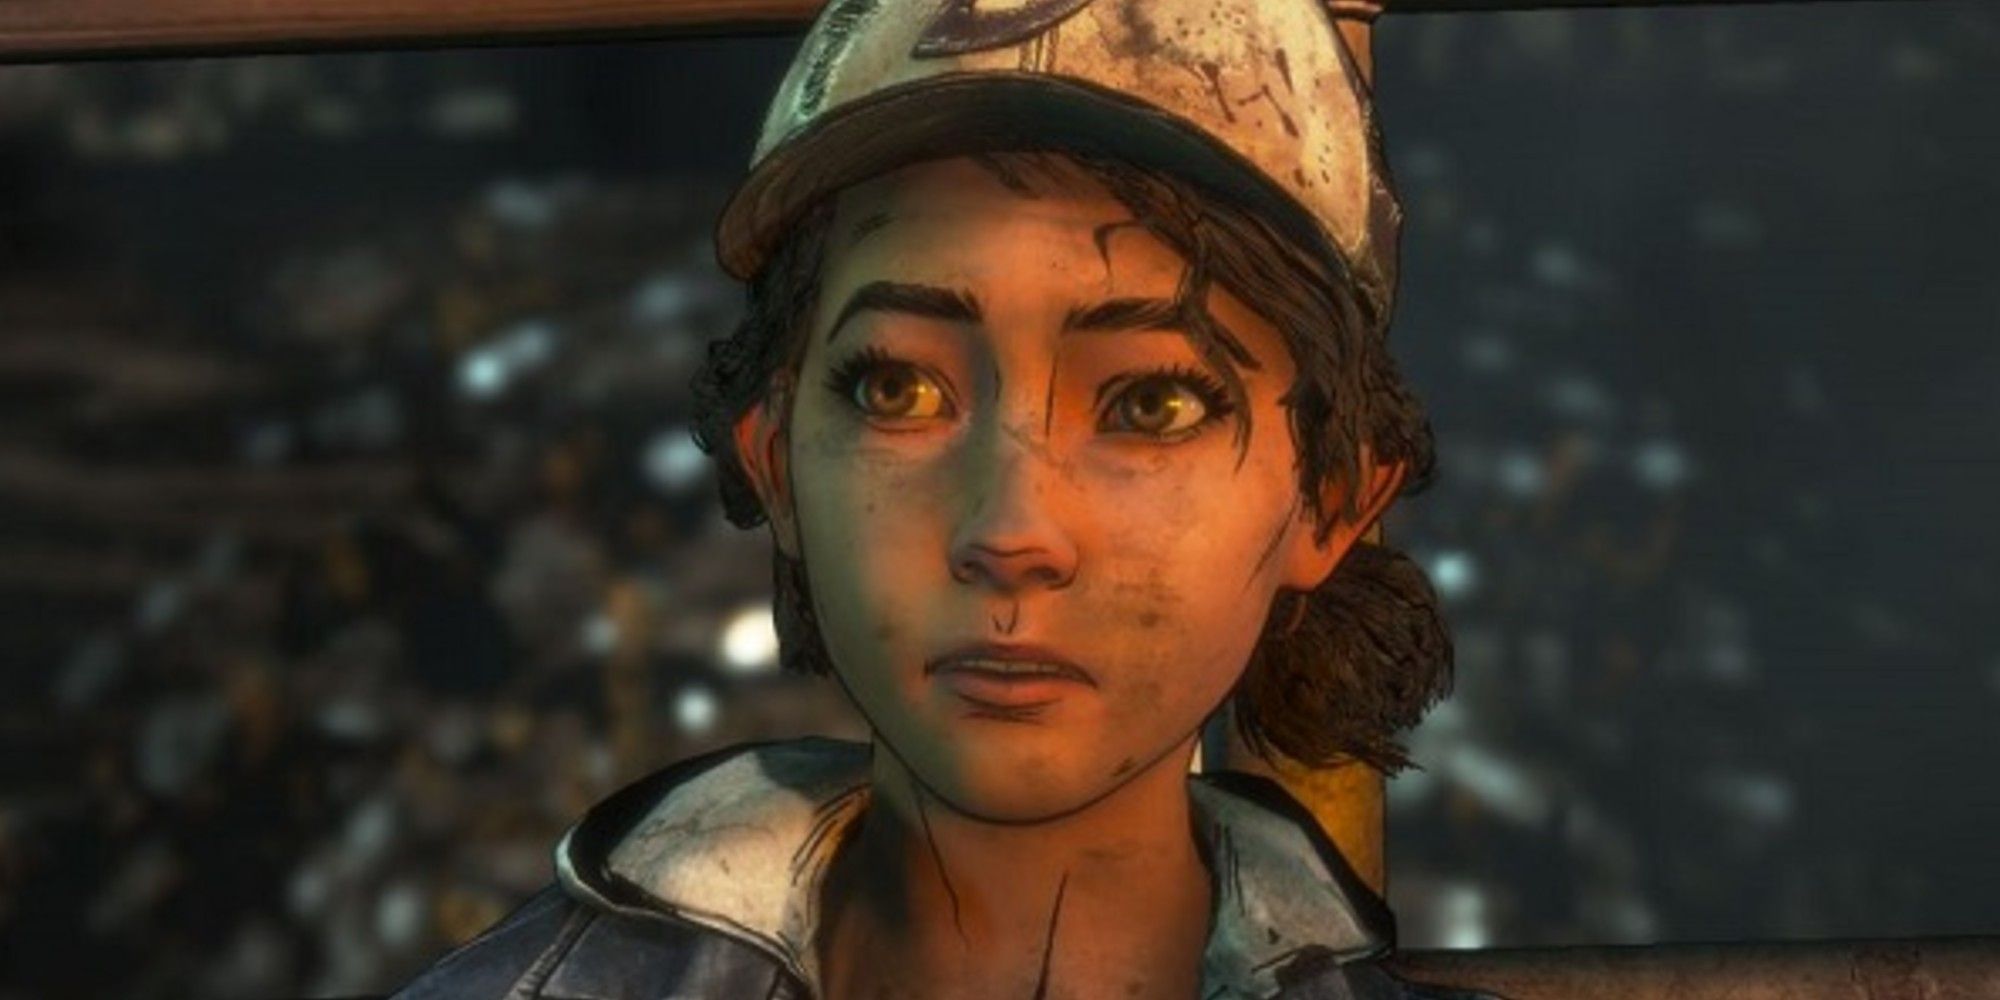 Clementine in Telltale's The Walking Dead